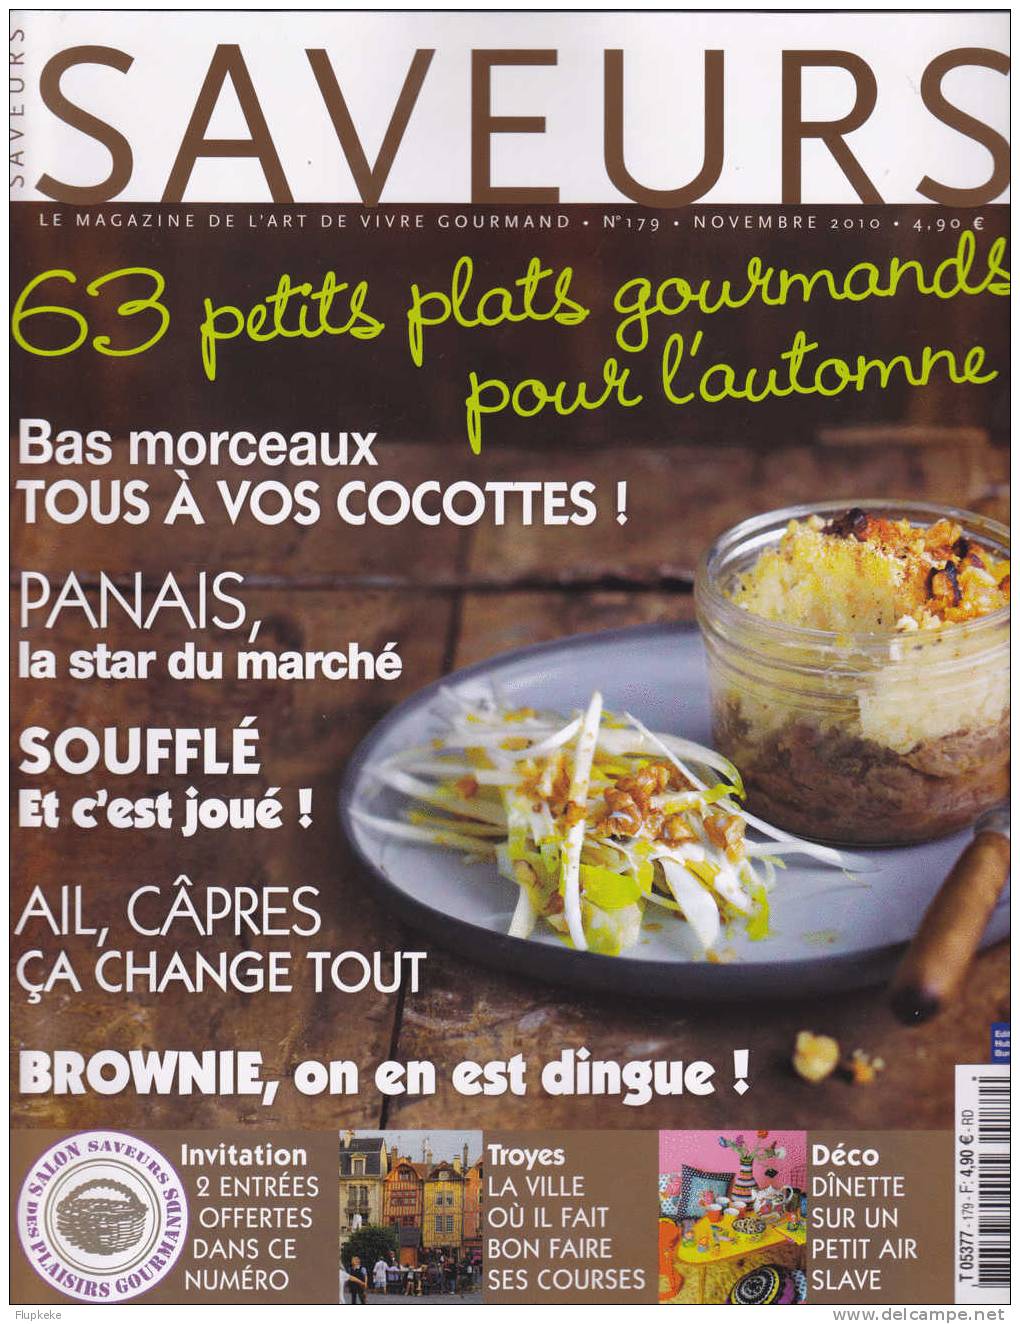 Saveurs 179 Novembre 2010 Panais La Star Du Marché Soufflé Ail Câpres Brownie Troyes - Cuisine & Vins